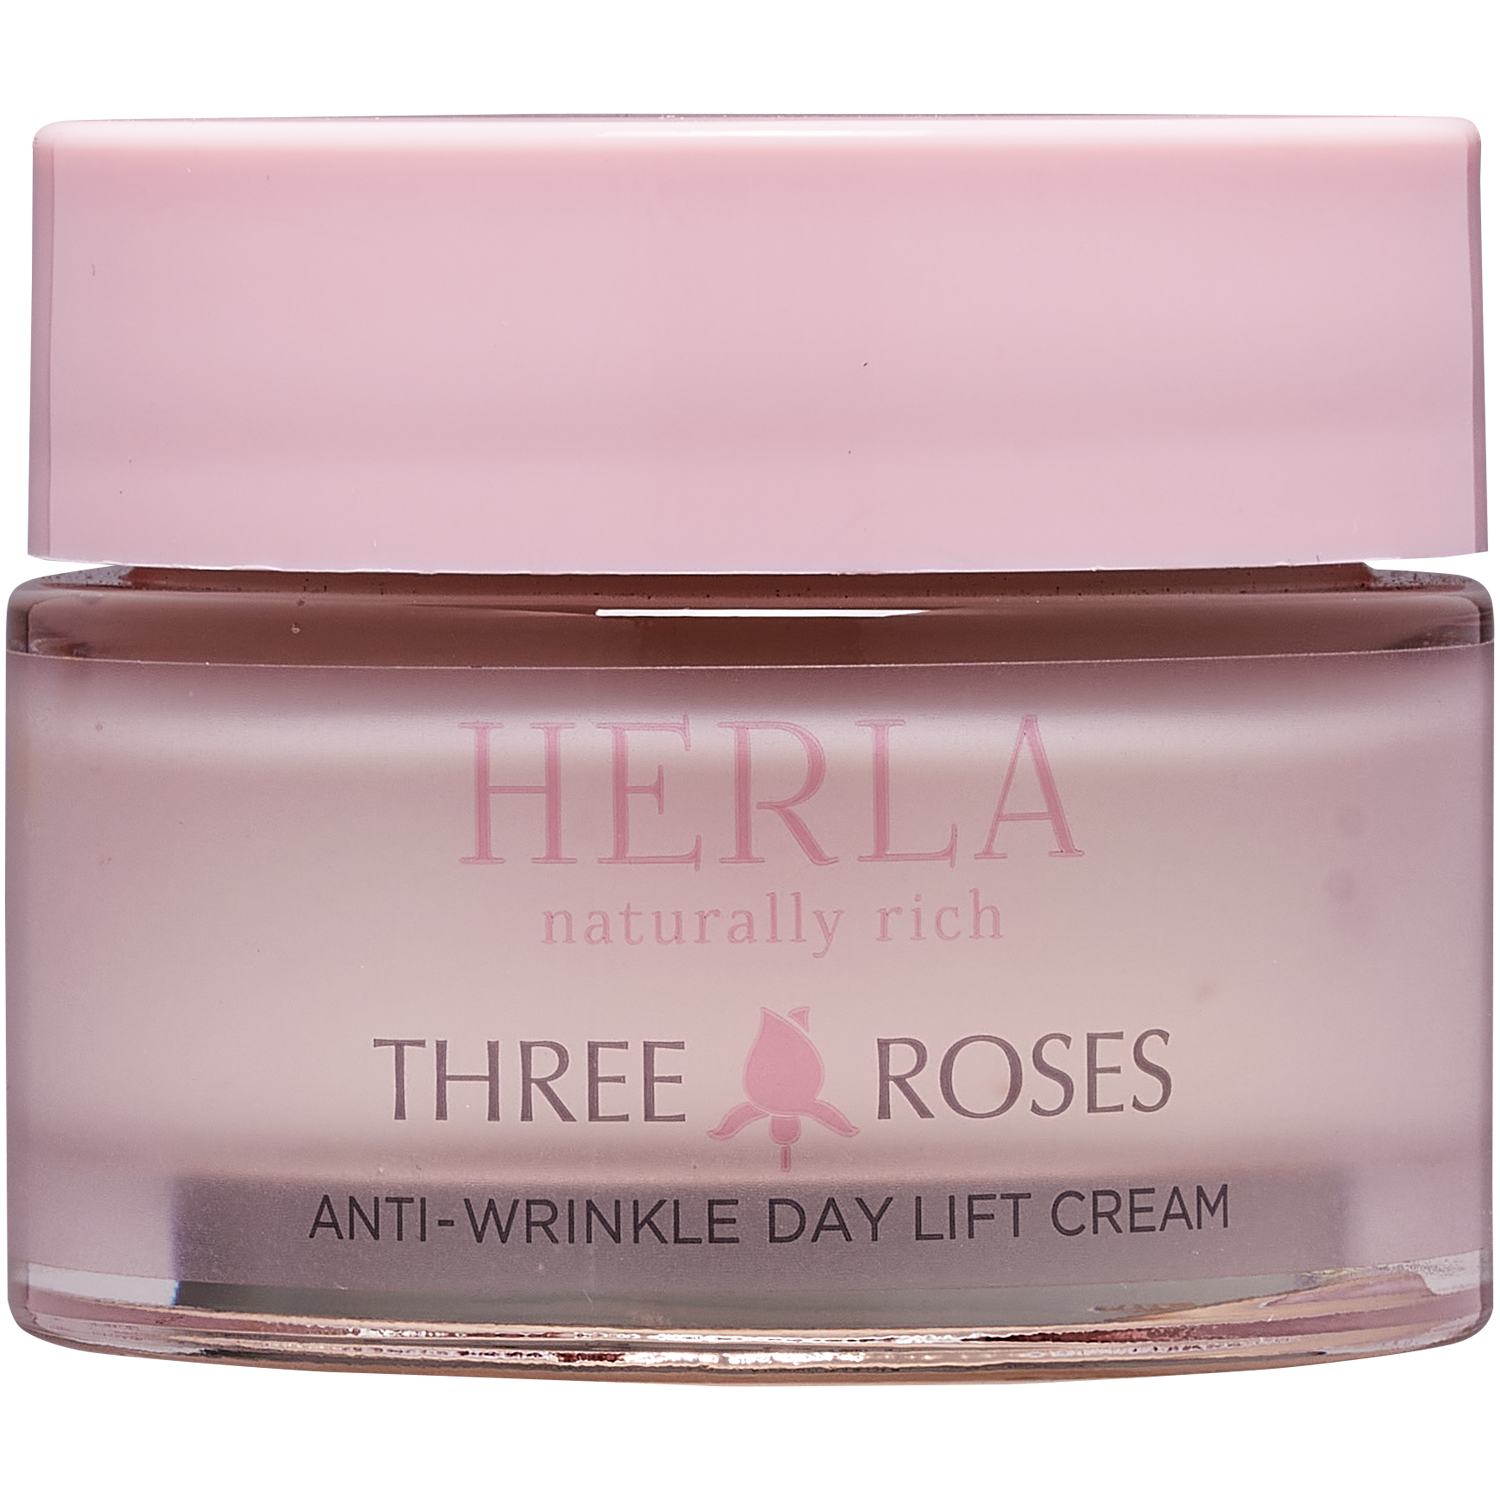 Дневной регенерирующий крем для лица против морщин Herla Three Roses, 50 мл